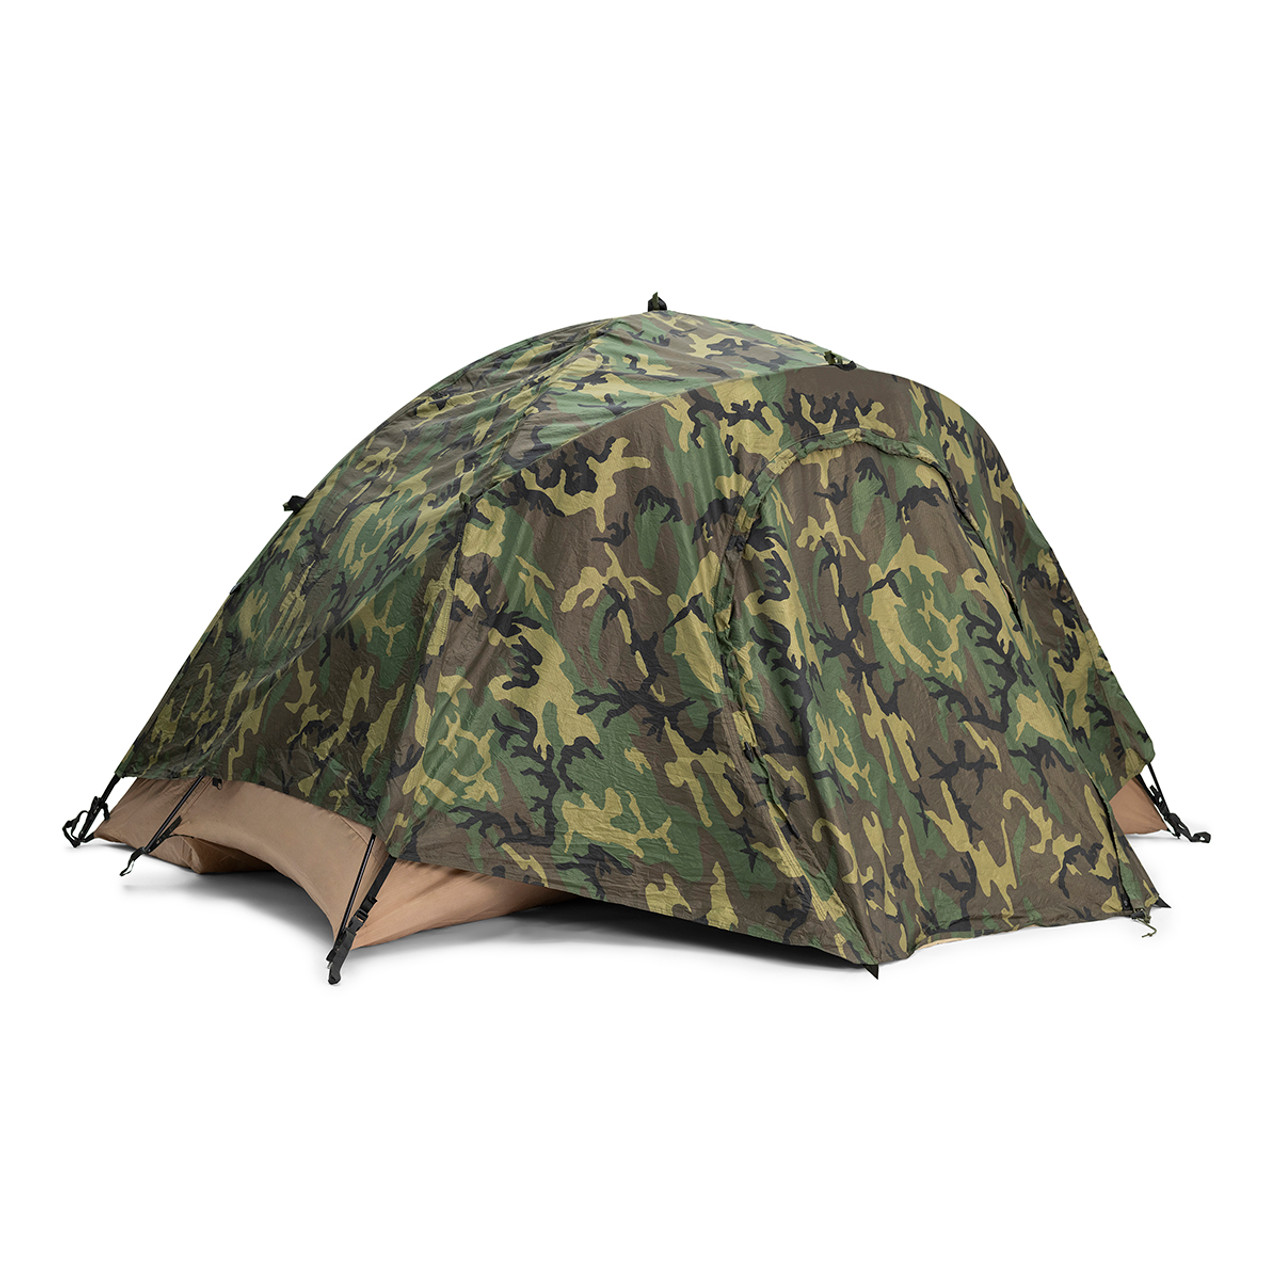 USMC Issue 2 Person Combat Tent | Military Surplus Dimond Eureka